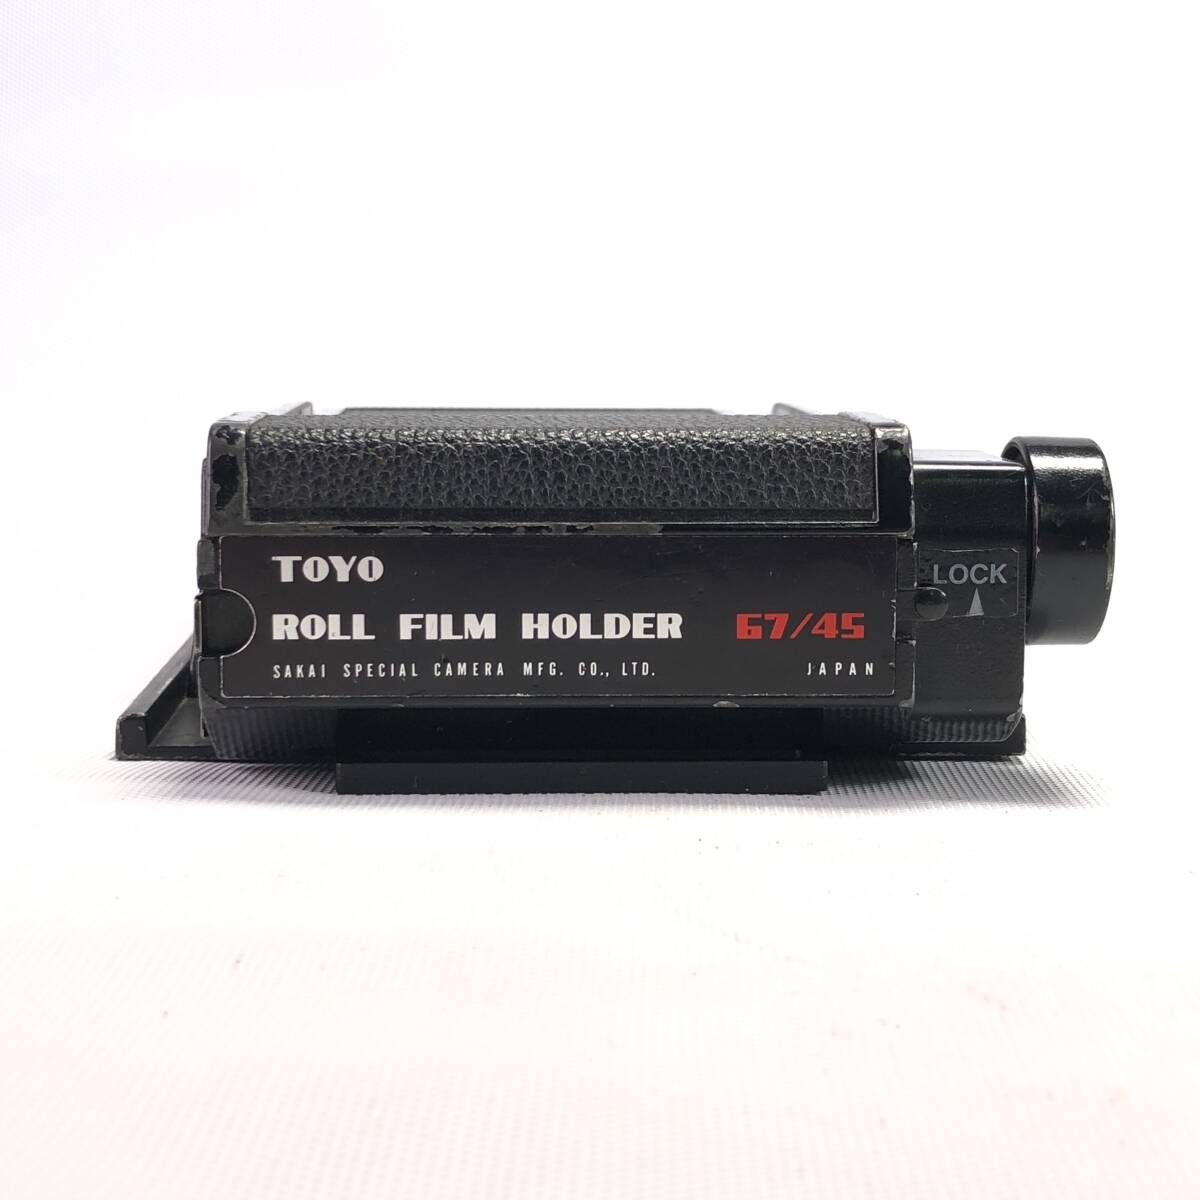 TOYO ROLL FILM HOLDER 67/45 トヨ ロールフィルムホルダー 並品 24D ヱOA4hの画像6